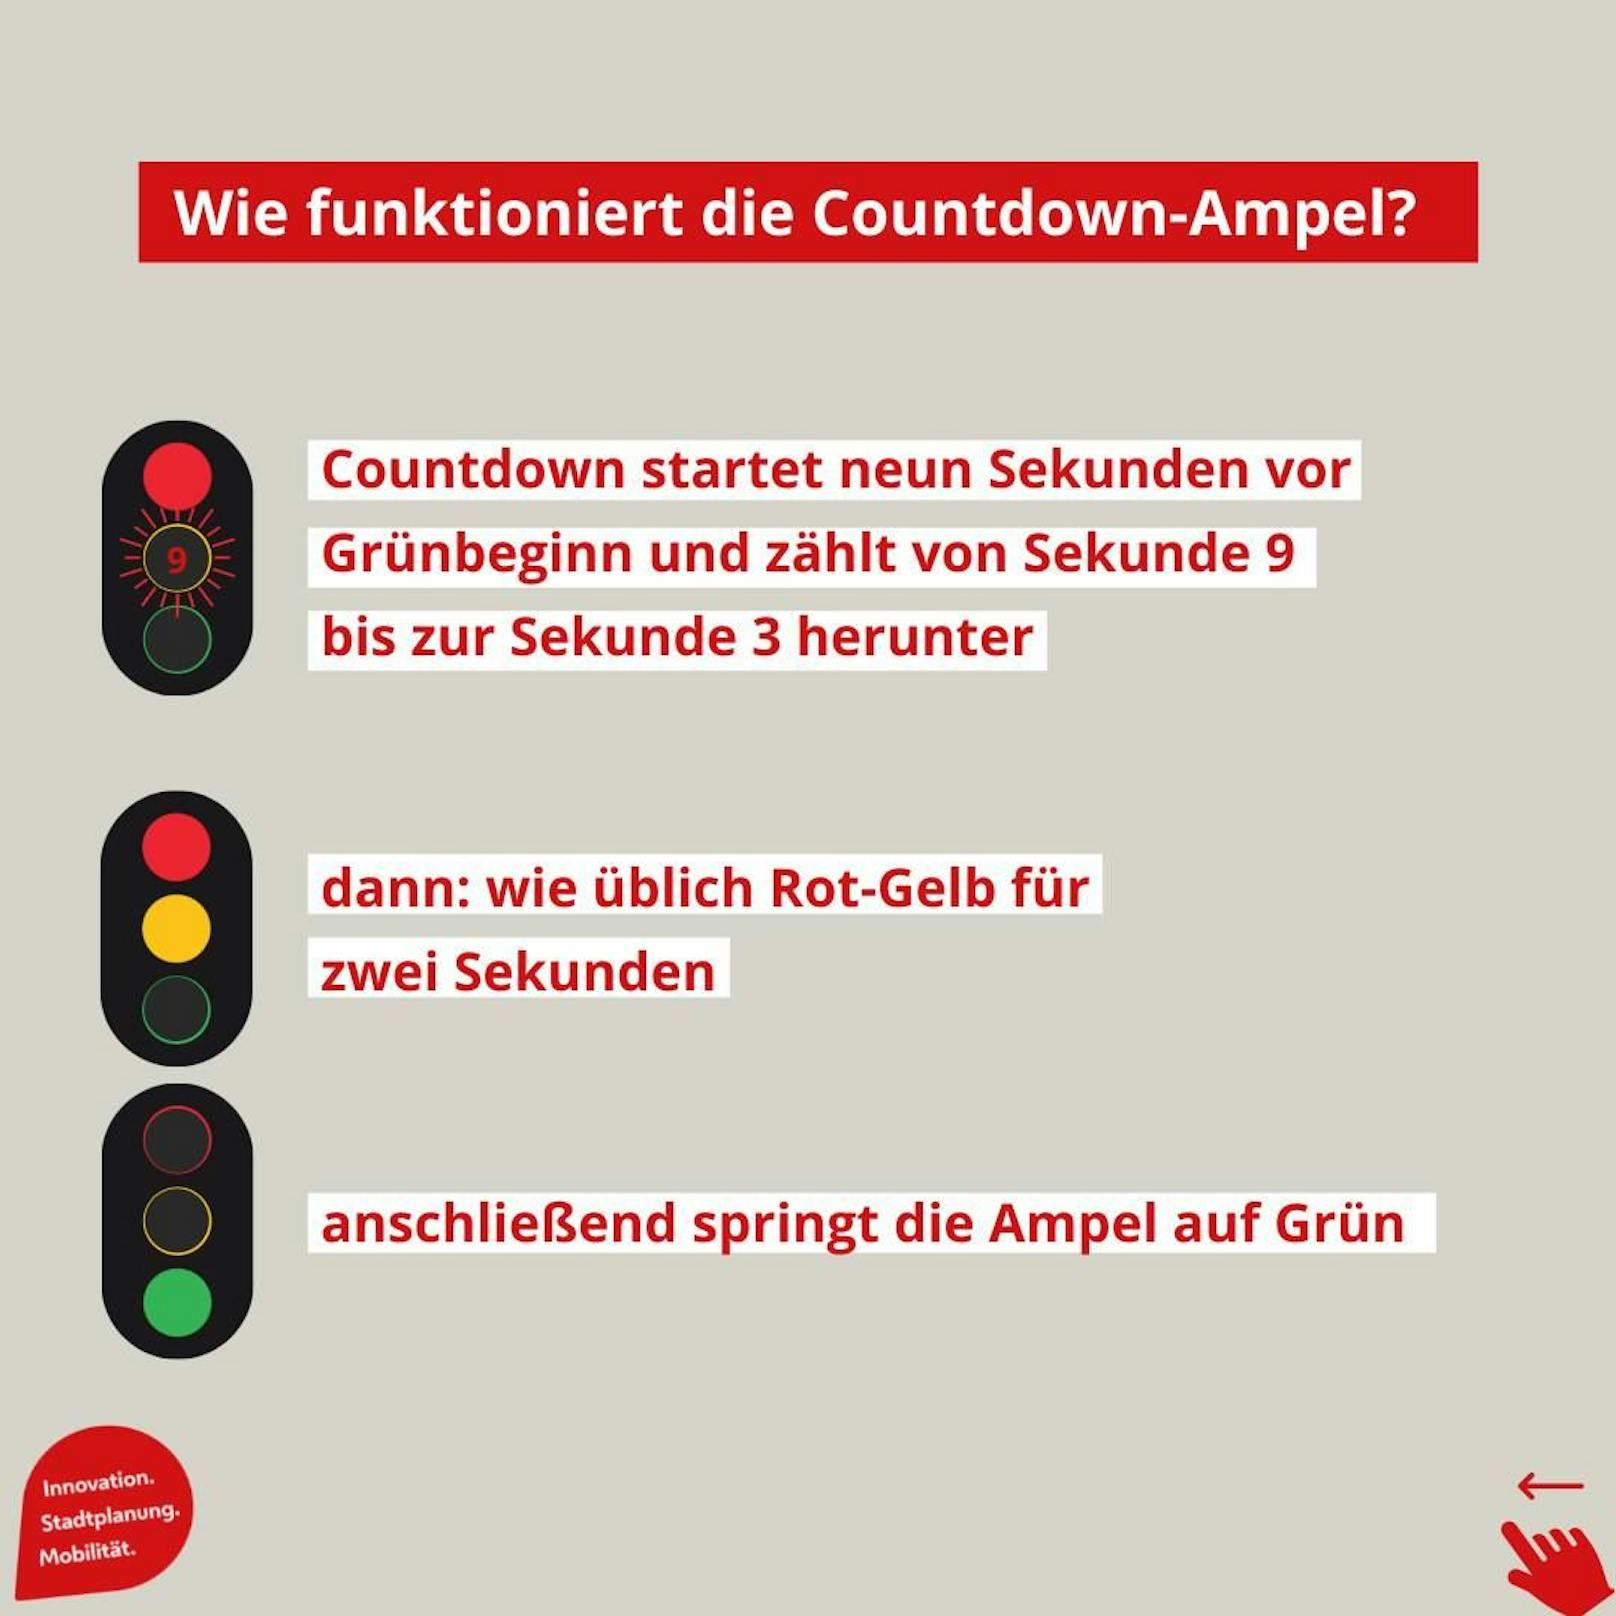 Wiens erste Ampel mit Countdown-Funktion&nbsp;startet neun Sekunden vor Grünbeginn und zählt bis zur Sekunde 3 herunter.